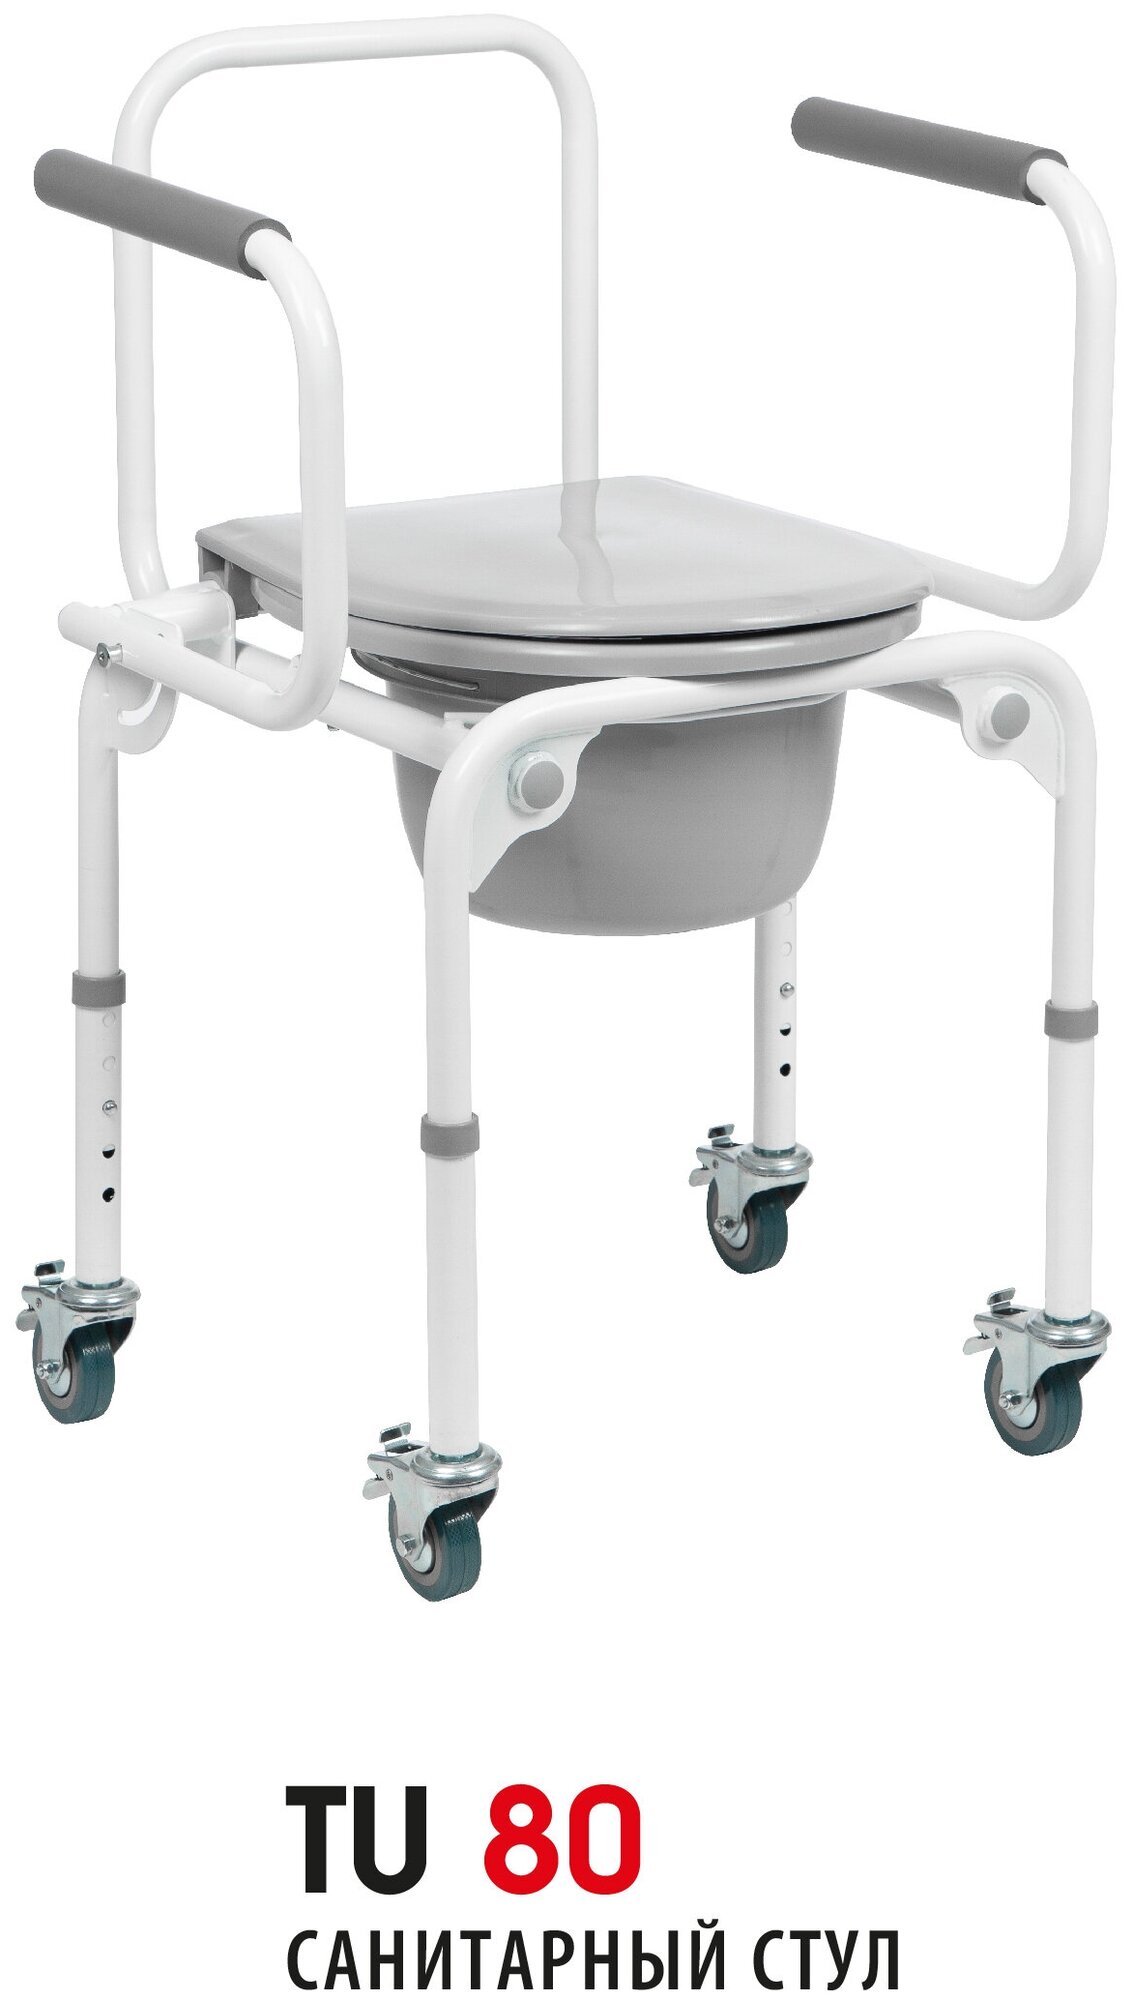 Санитарный стул на колесах с откидными подлокотниками регулируемый по высоте Ortonica TU 80 45 см до 130 кг